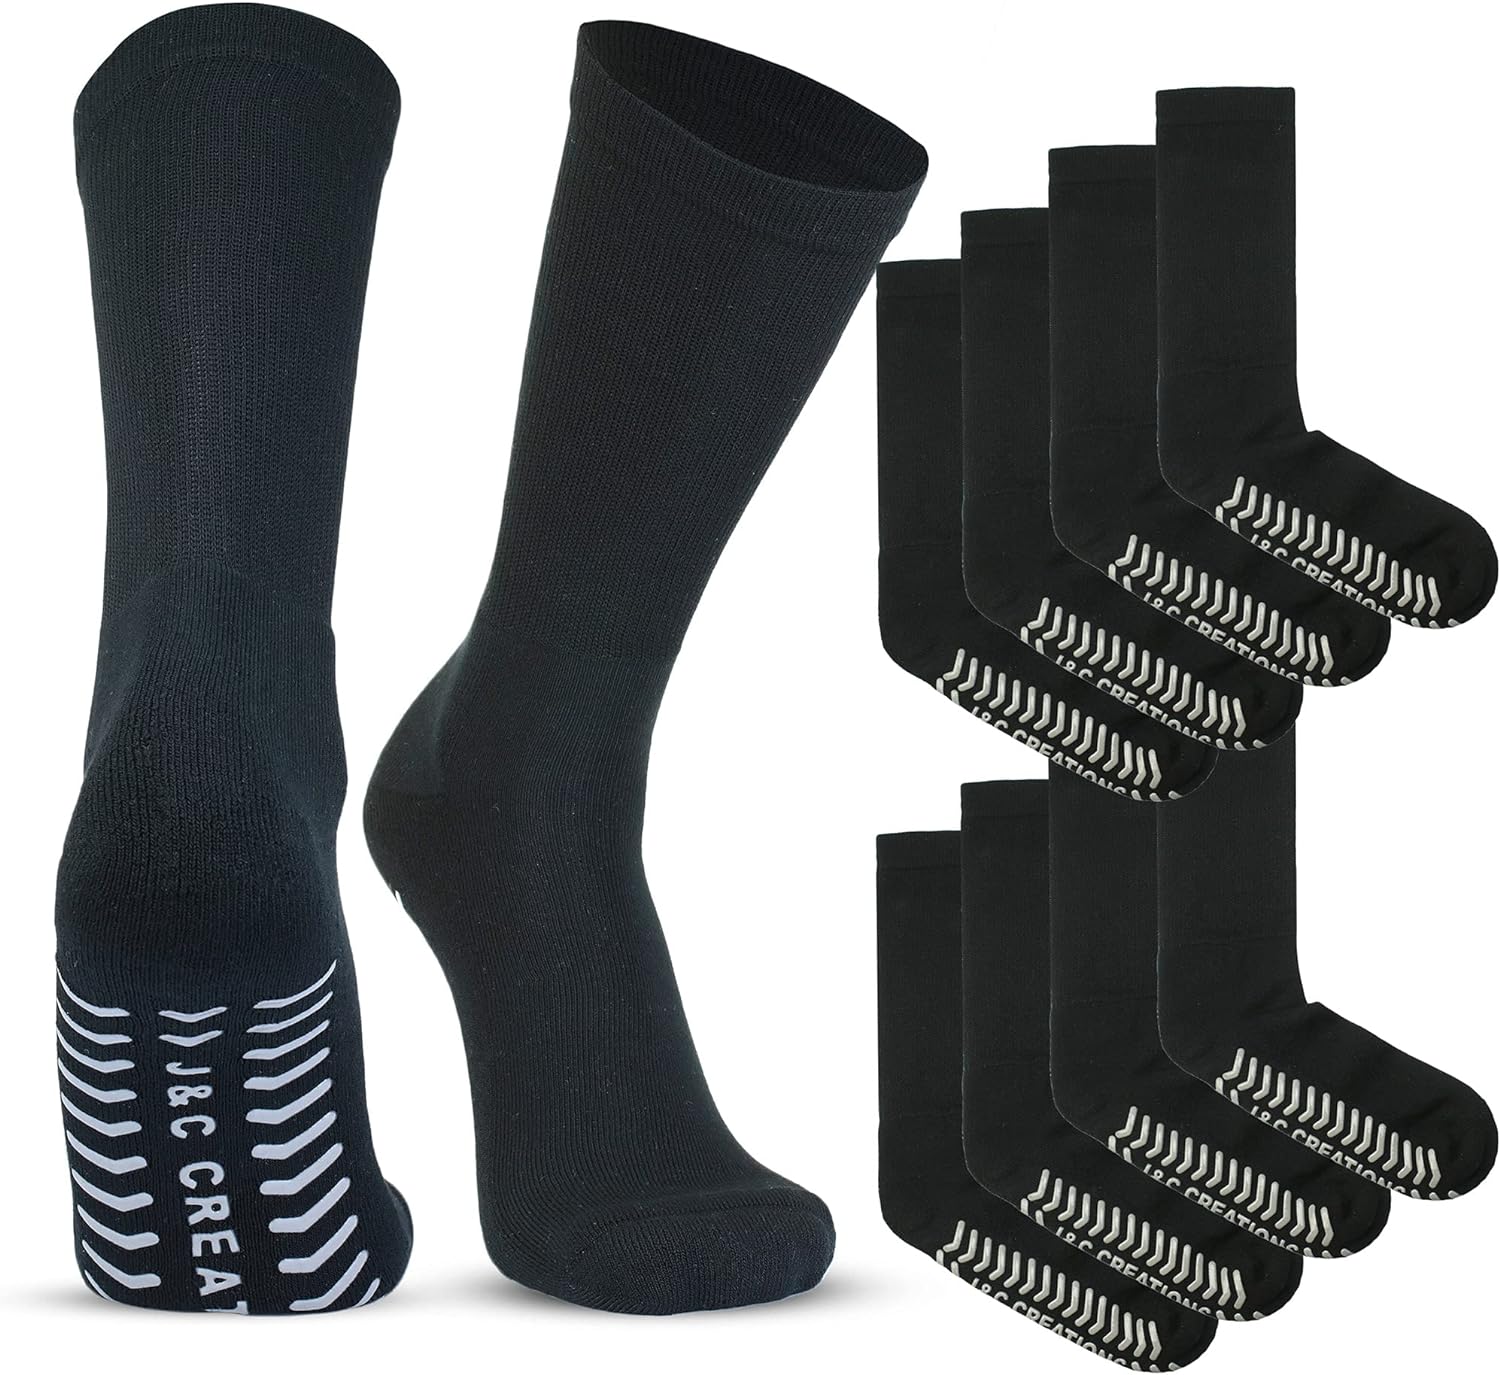 Hospital Socks With Grips - Diabetic Neuropathy Socks - Physician Designed - Non-Slip Socks Size: Mens 10-13, Womens 9-11